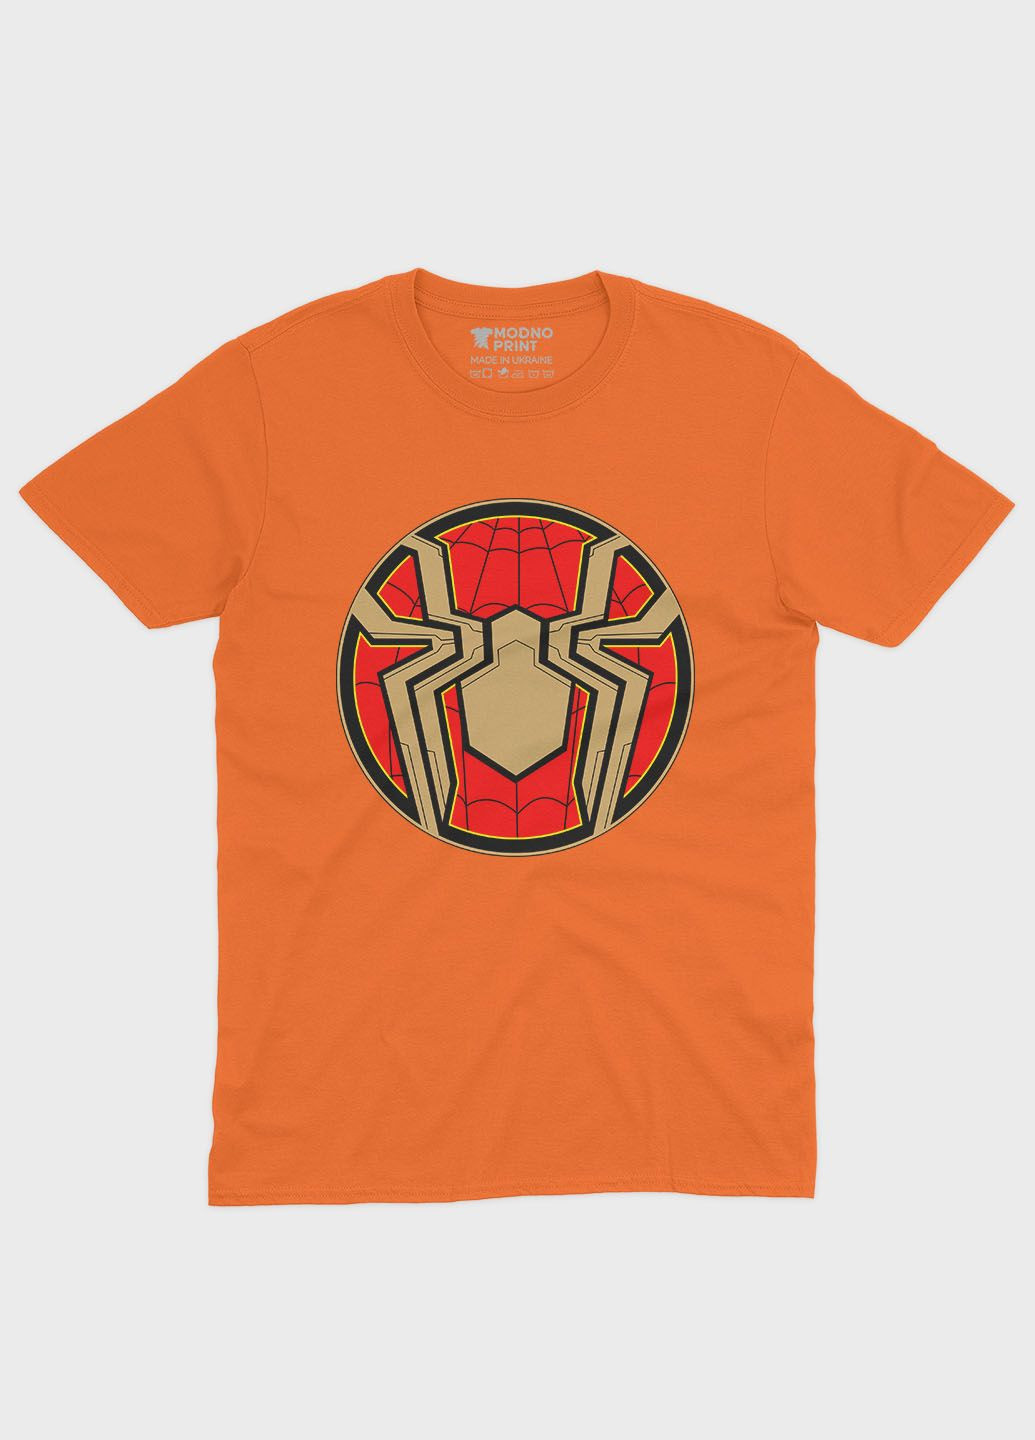 Оранжевая демисезонная футболка для девочки с принтом супергероя - человек-паук (ts001-1-ora-006-014-105-g) Modno